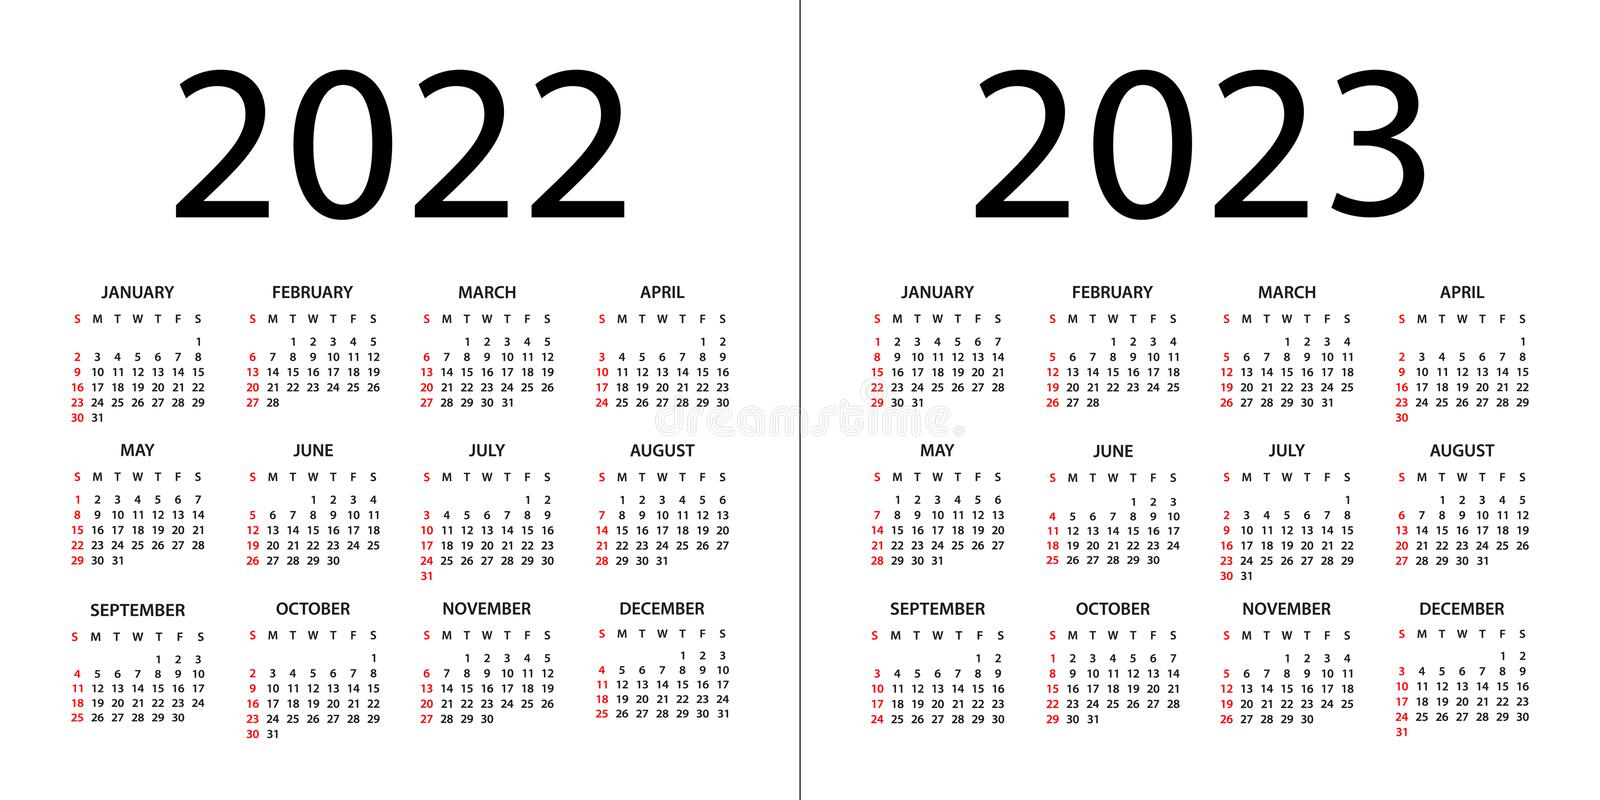 Calendario 2022 2023 Le calendrier 2022/2023 est disponible - LAURA-TT